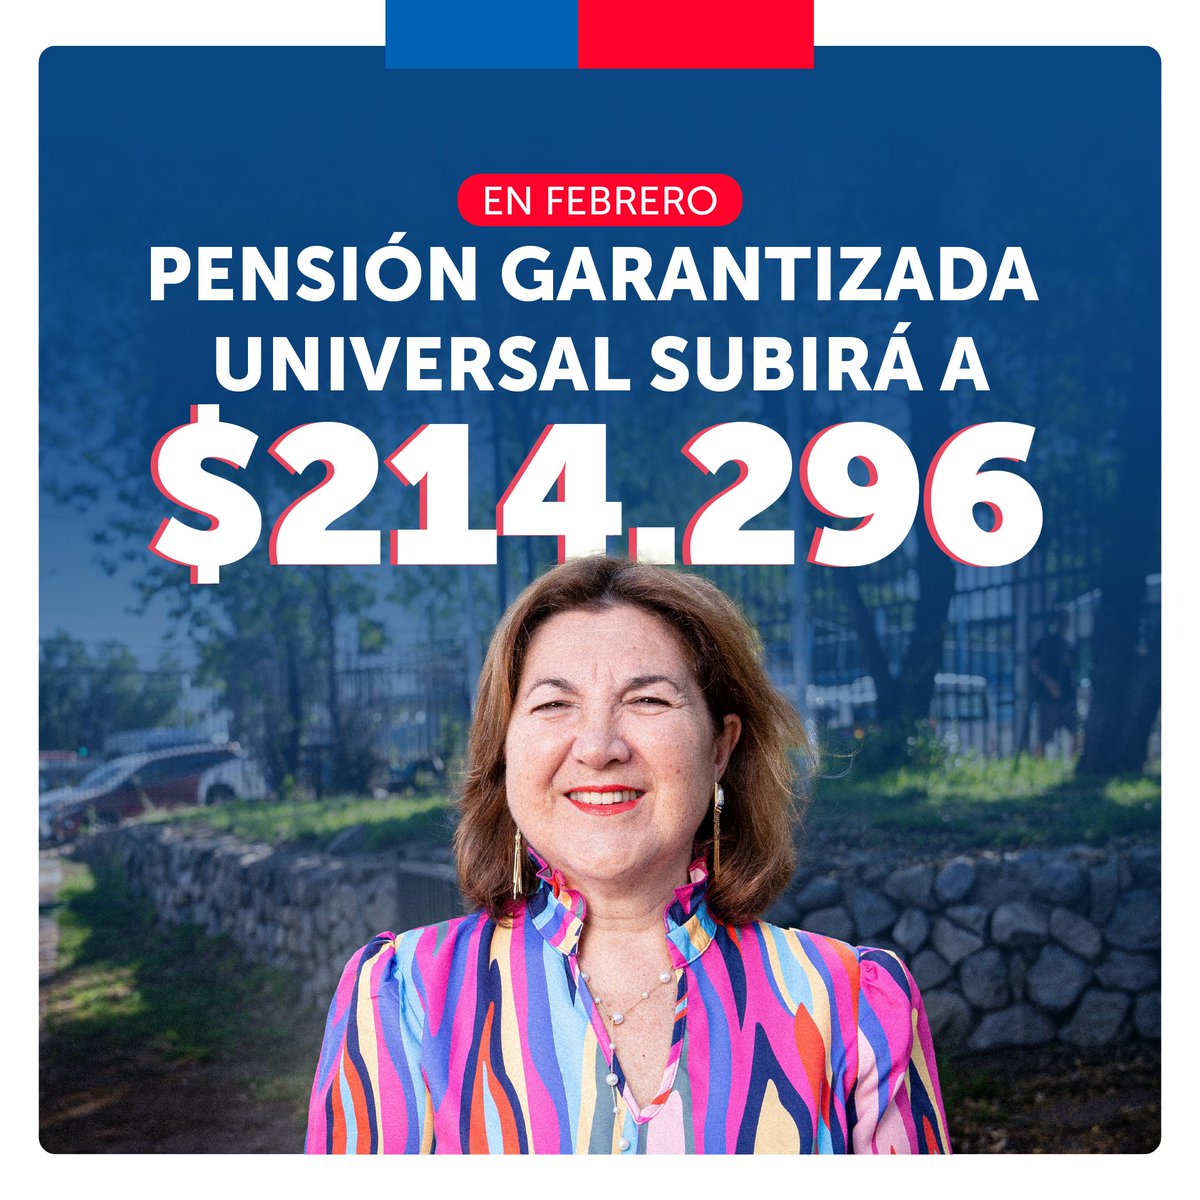 El próximo 1 de febrero, la Pensión Garantizada Universal alcanzará los $214.296. Un alza de 3,9% que beneficiará a más de 2.400.000 personas 🙌🏼 Seguimos trabajando por #MejoresPensiones para Chile 🇨🇱